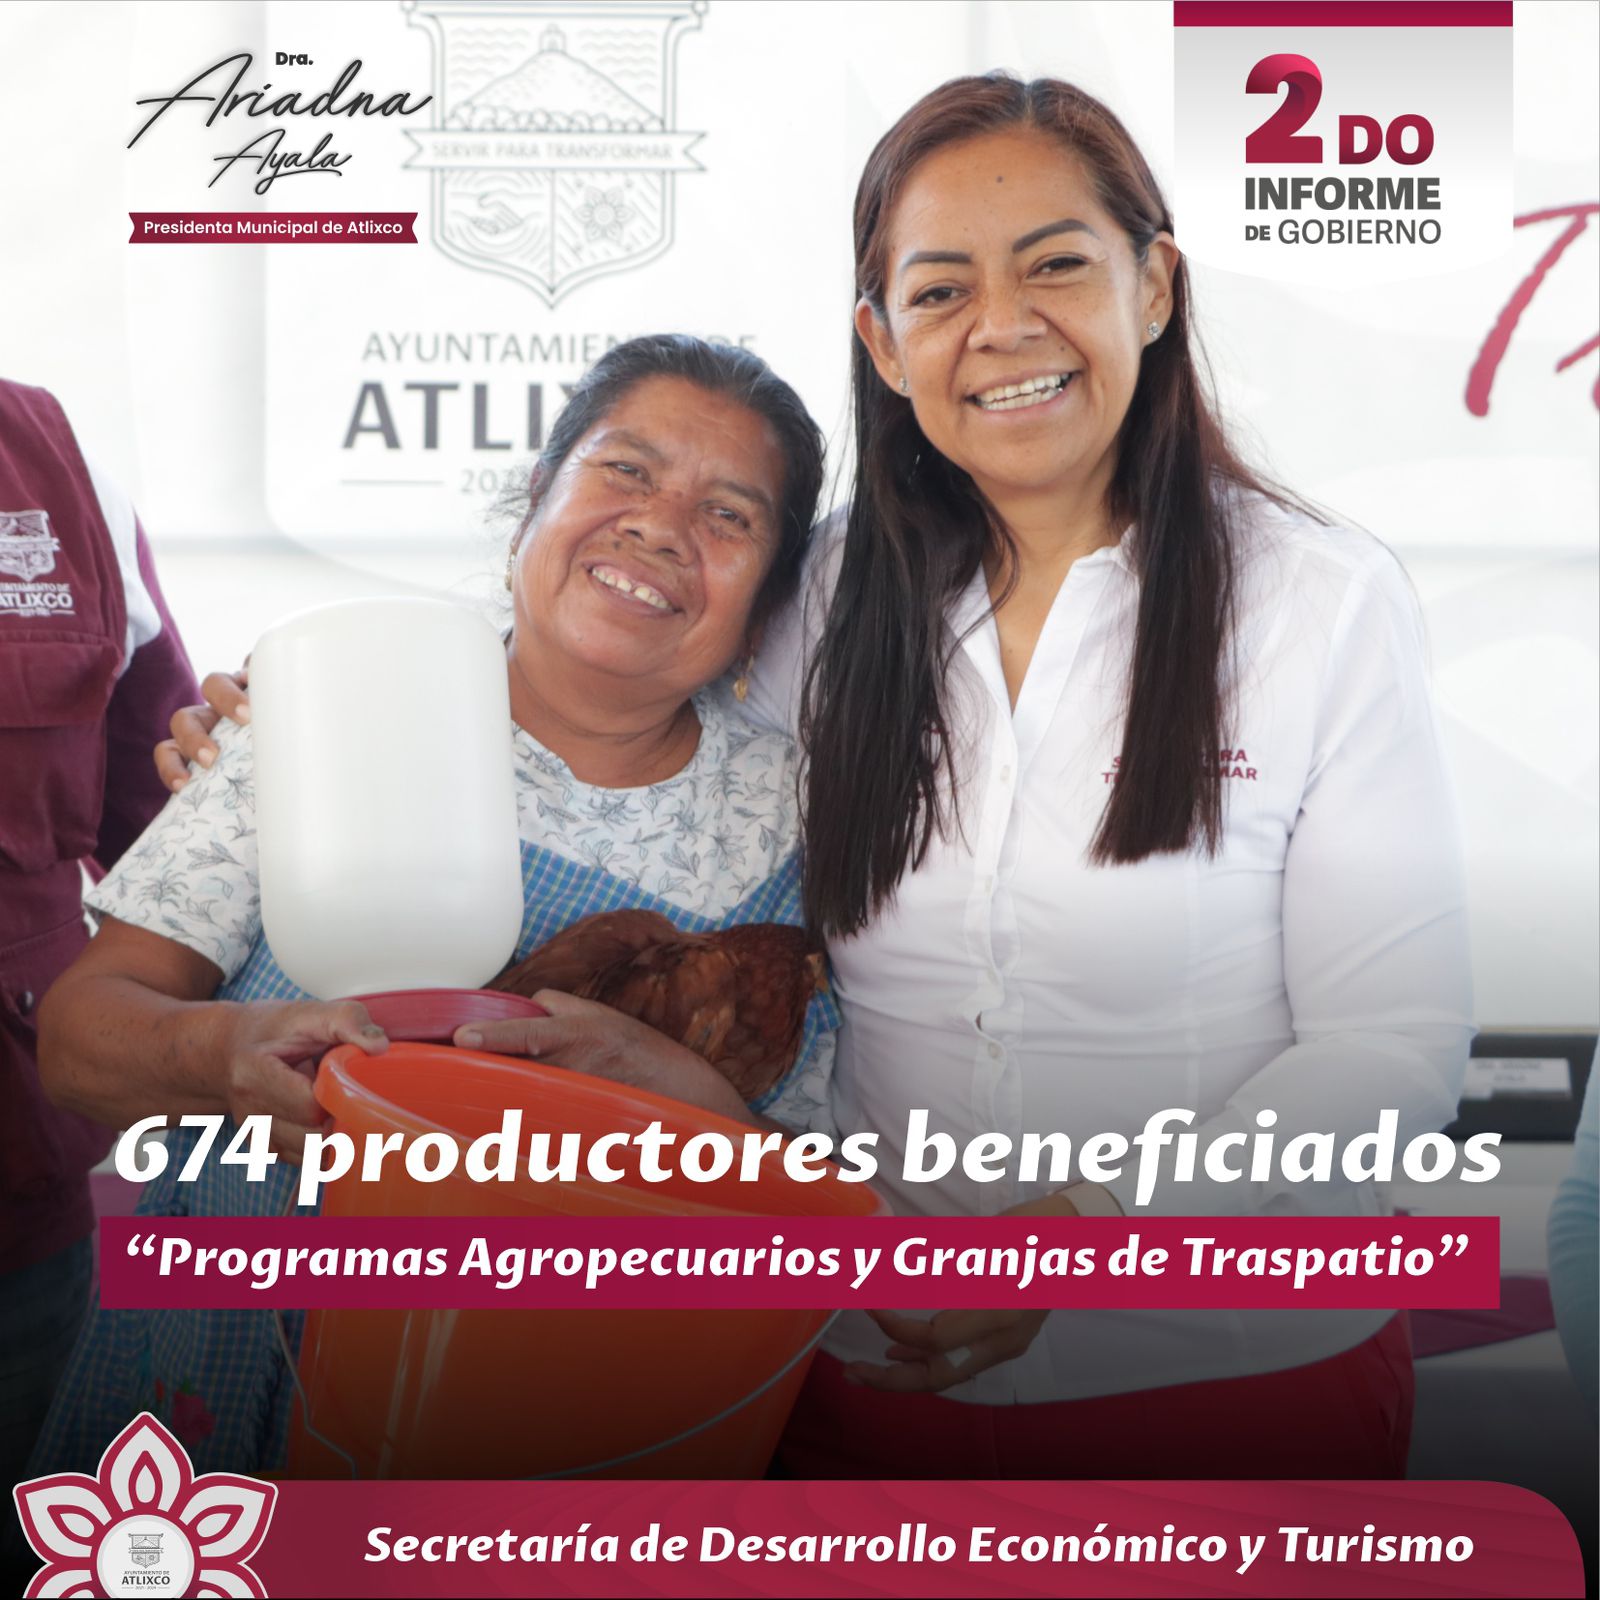 Ariadna Ayala destaca proyección turística y económica de Atlixco